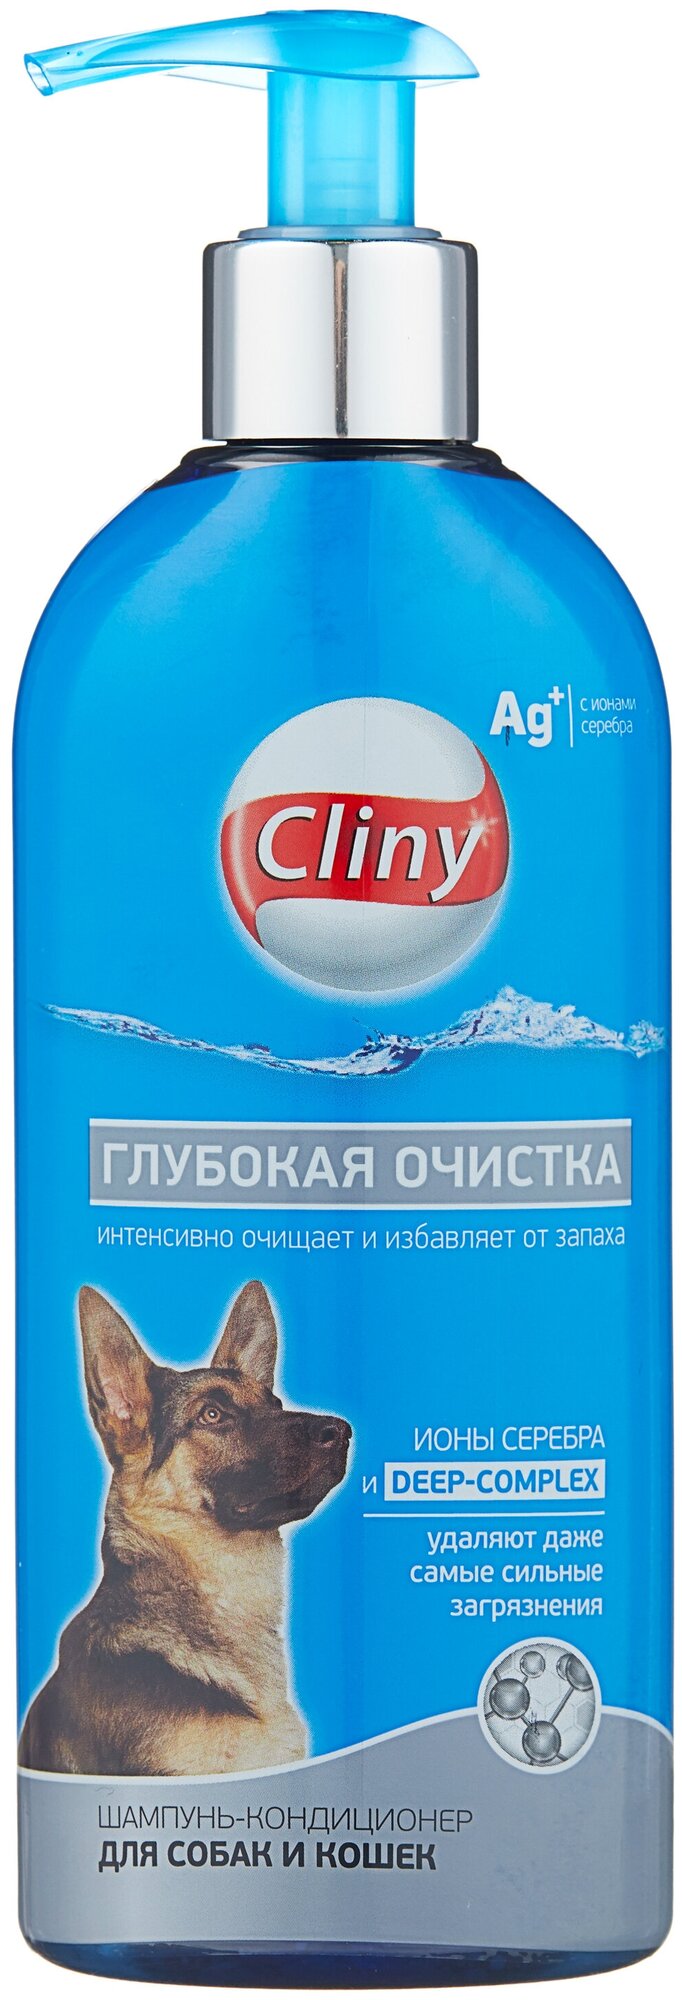 Шампунь -кондиционер Cliny (Neoterica) Глубокая очистка для собак и кошек